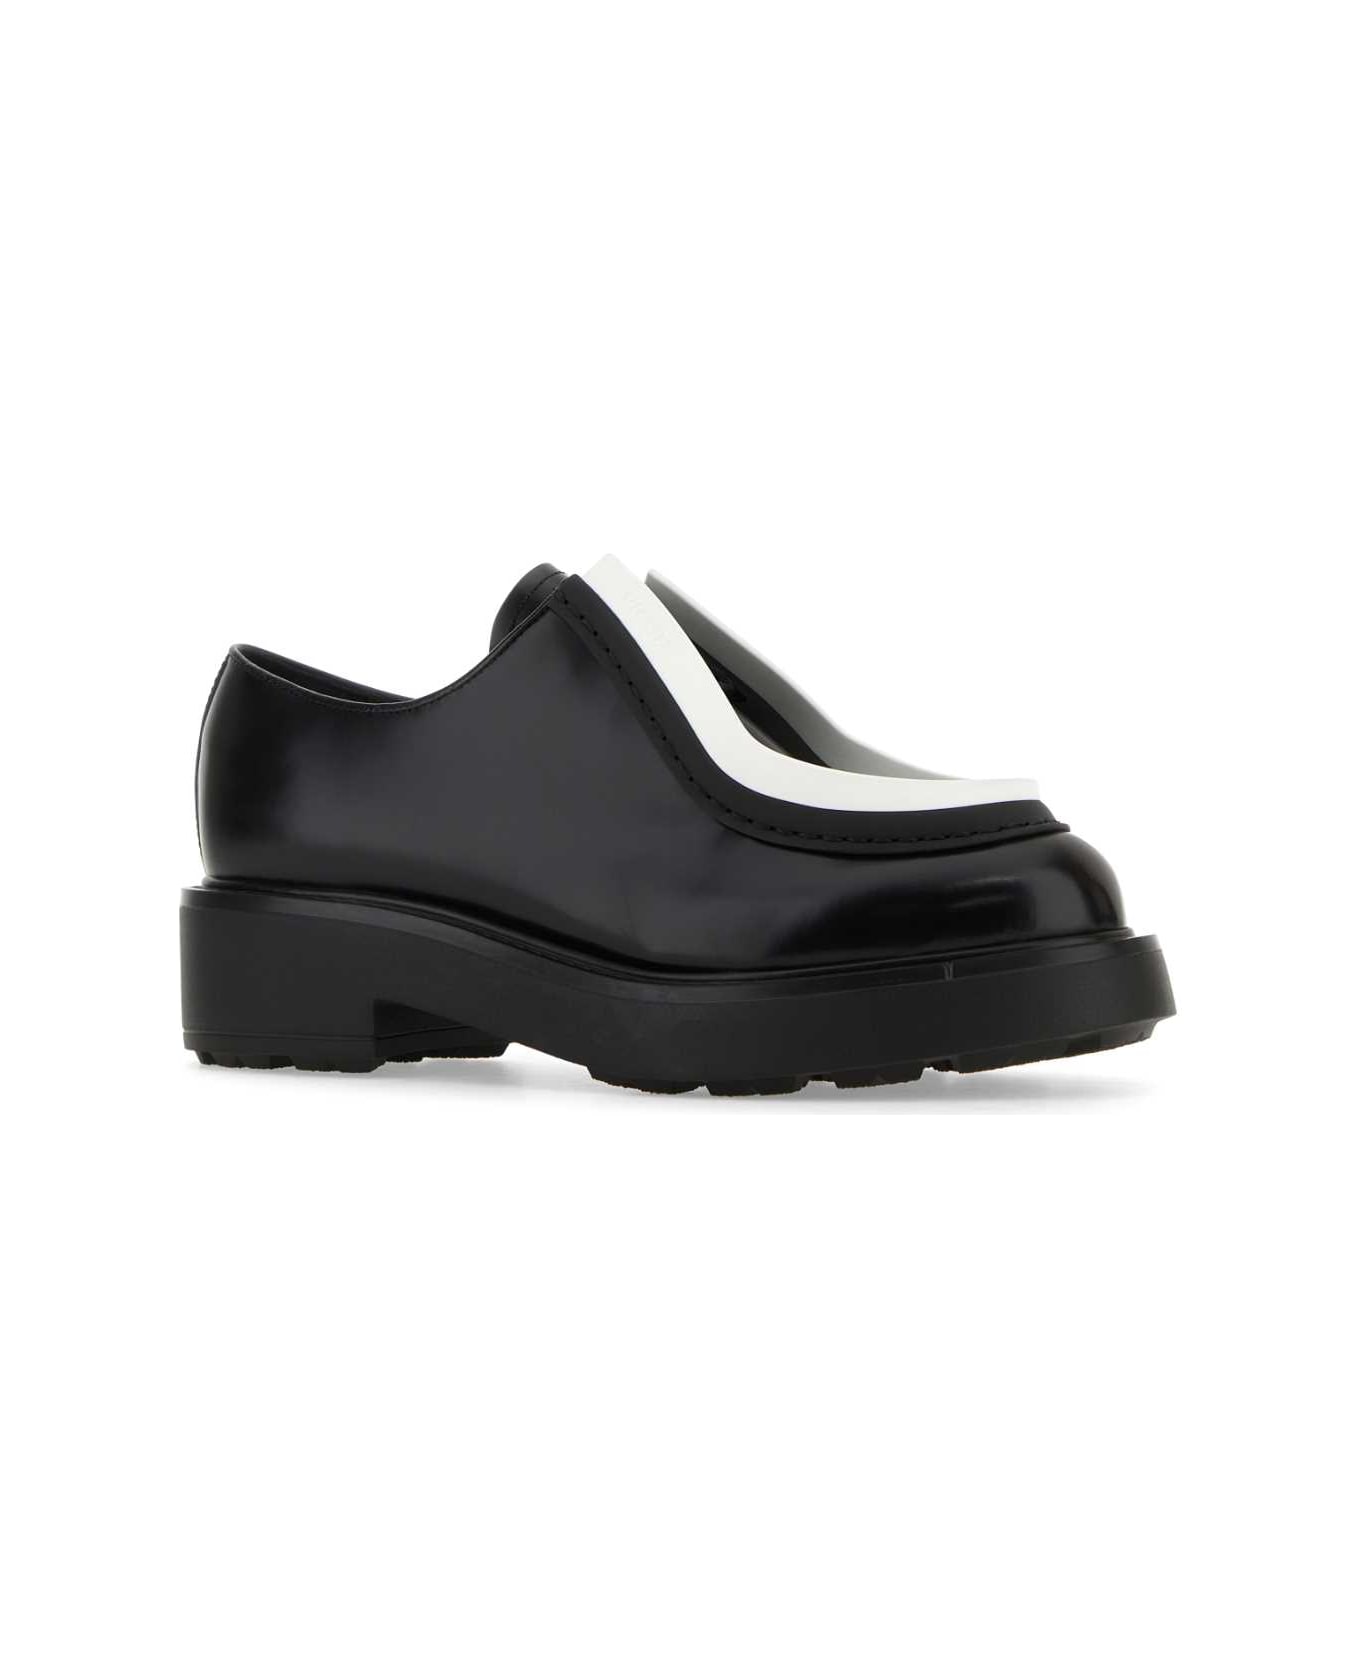 Prada Black Leather Lace-up Shoes - NEROBIACNO ハイヒール